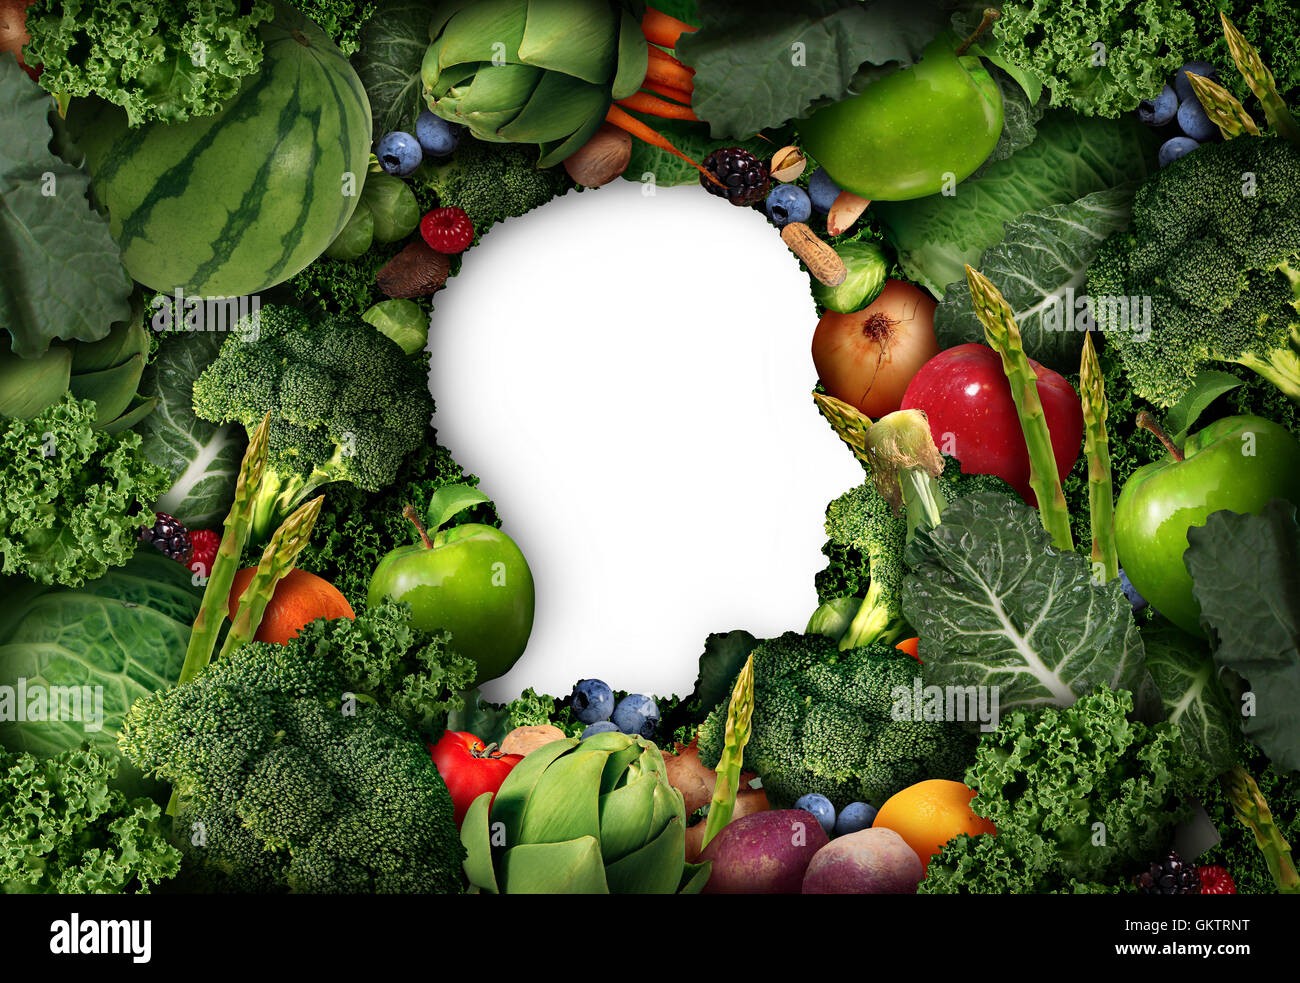 La frutta e la verdura per il pensiero umano dieta sana nozione come azienda prodotti freschi conformata come un simbolo di testa con verdure e sano cibo naturale in un 3D illustrazione dello stile. Foto Stock